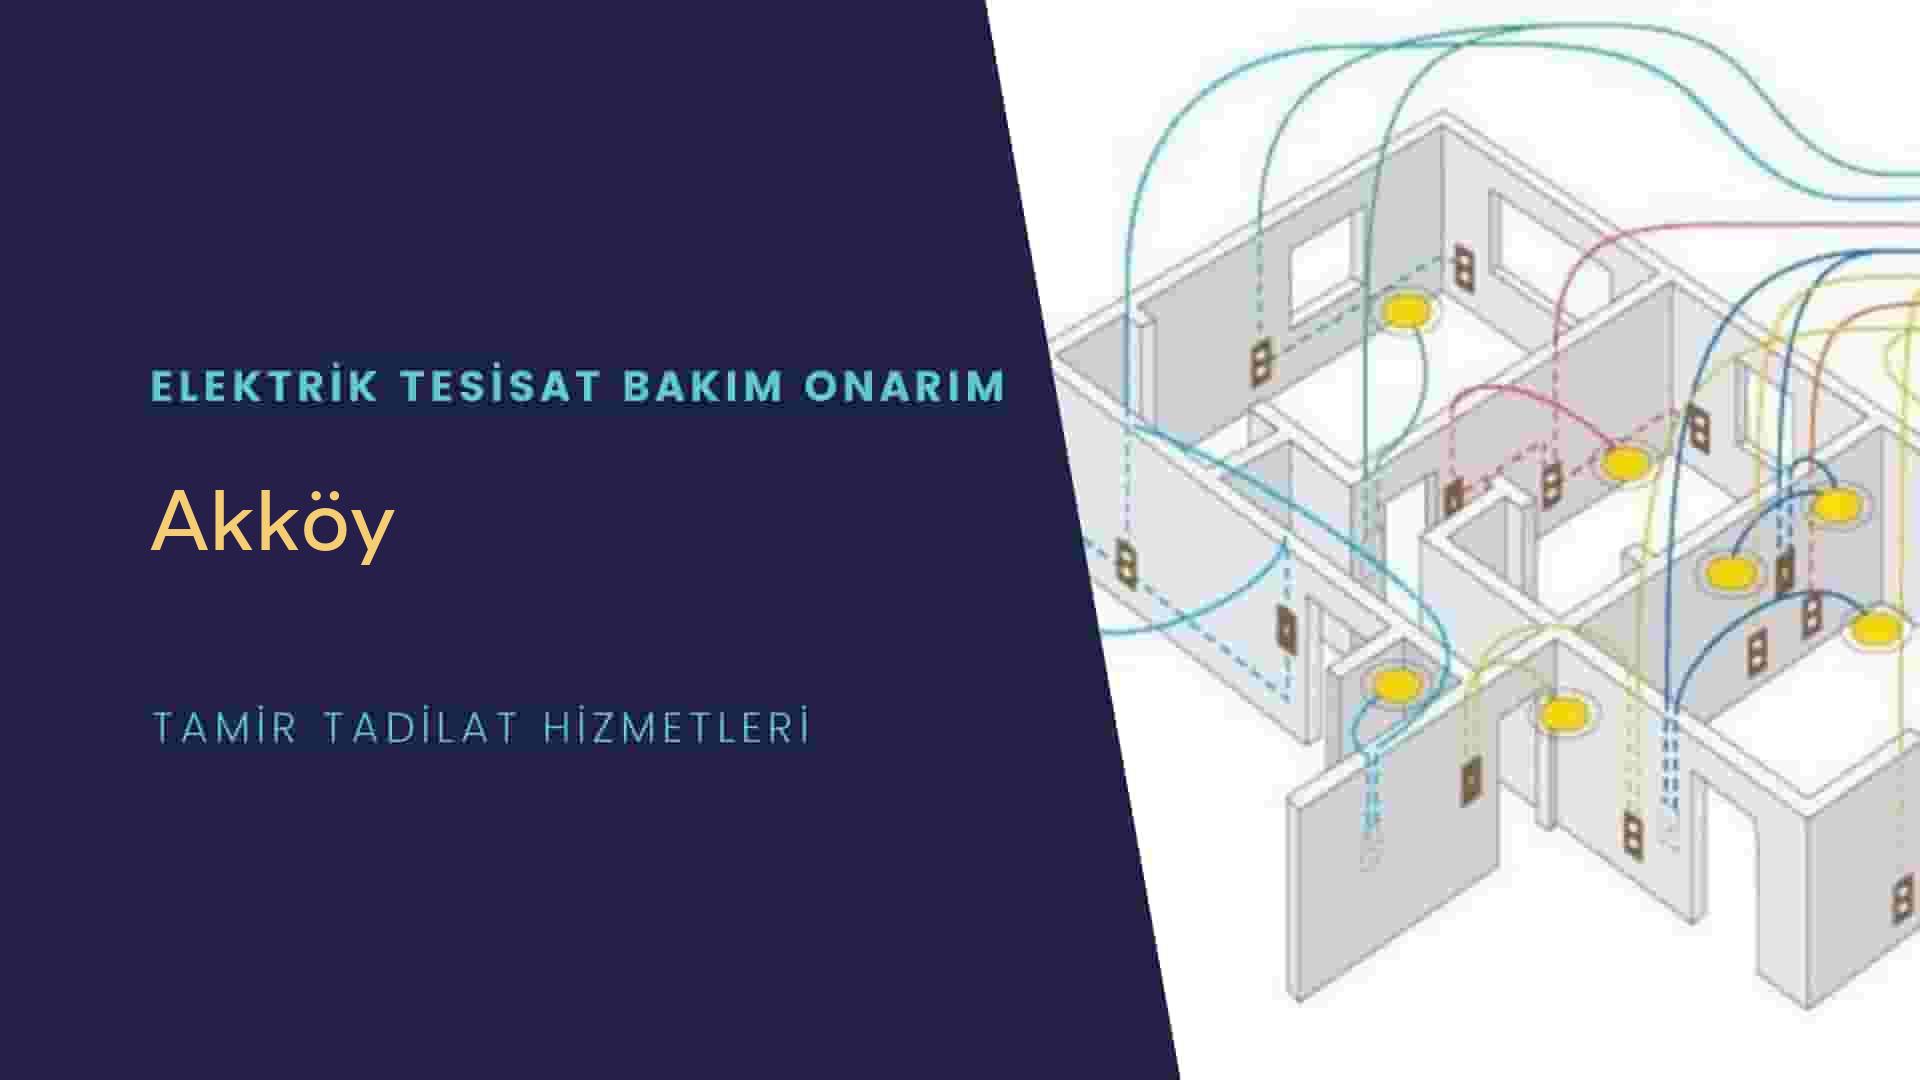 Akköy'de elektrik tesisatı ustalarımı arıyorsunuz doğru adrestenizi Akköy elektrik tesisatı ustalarımız 7/24 sizlere hizmet vermekten mutluluk duyar.